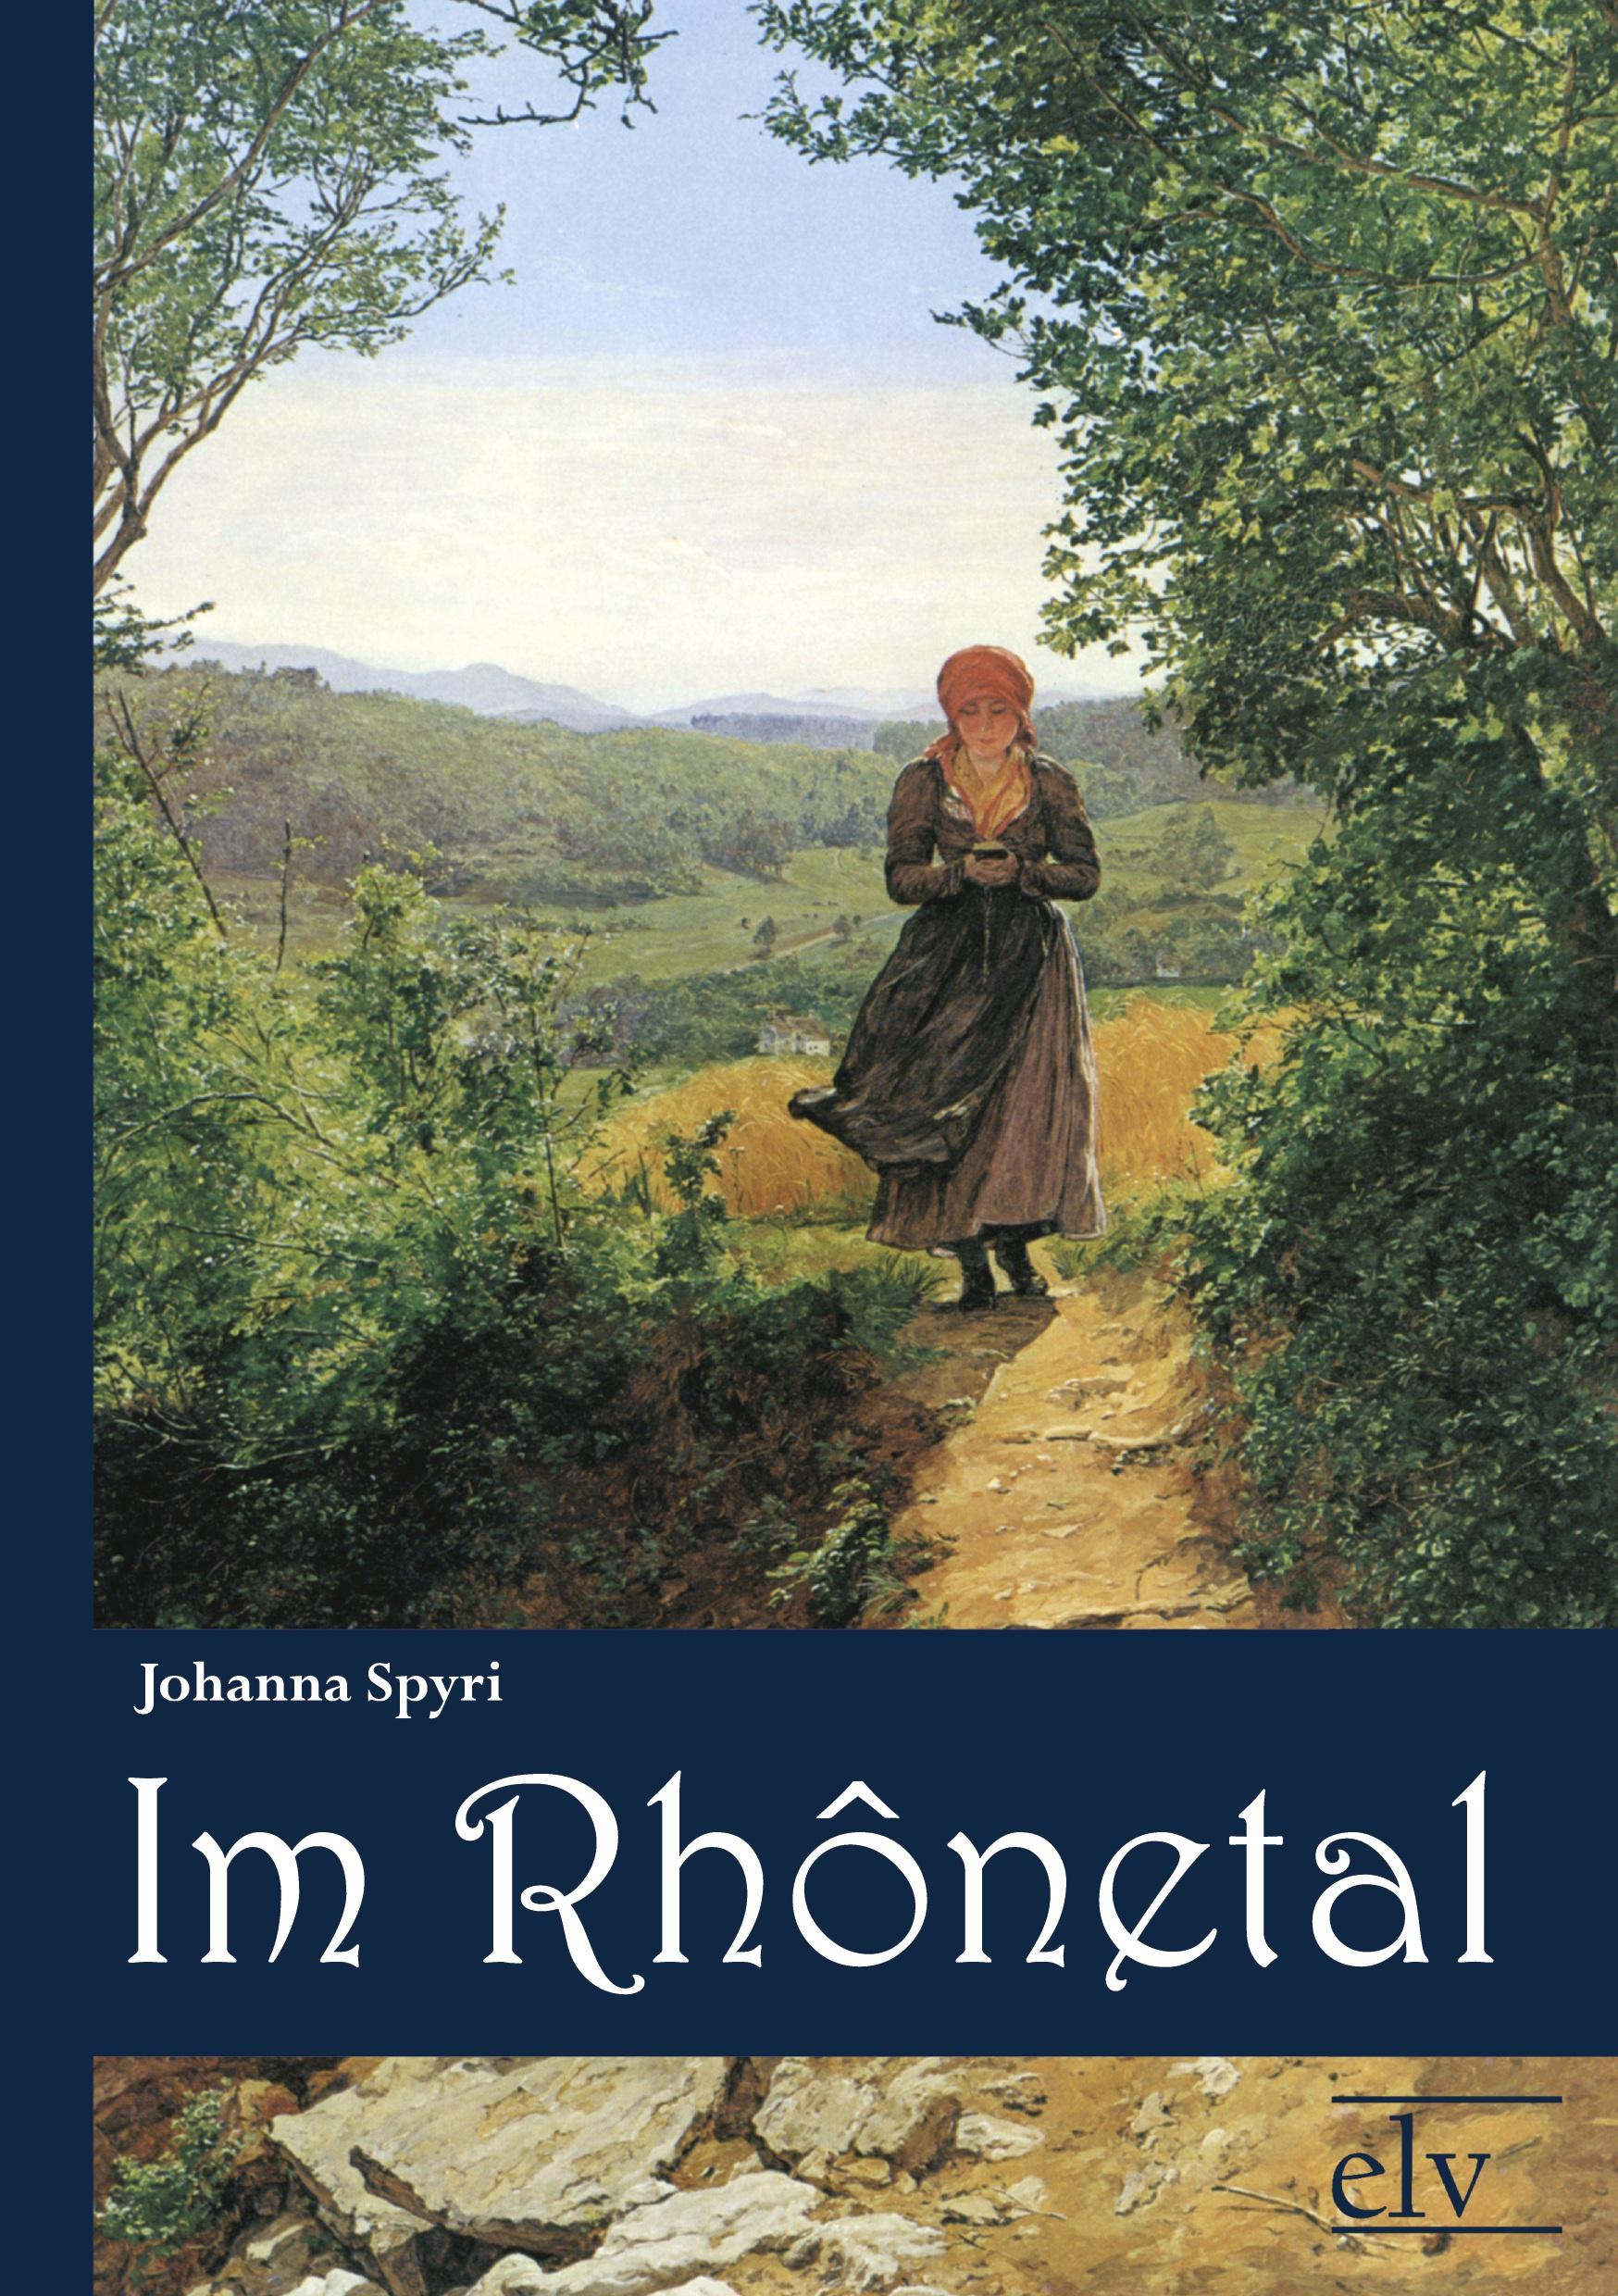 Im Rhonetal - Spyri, Johanna